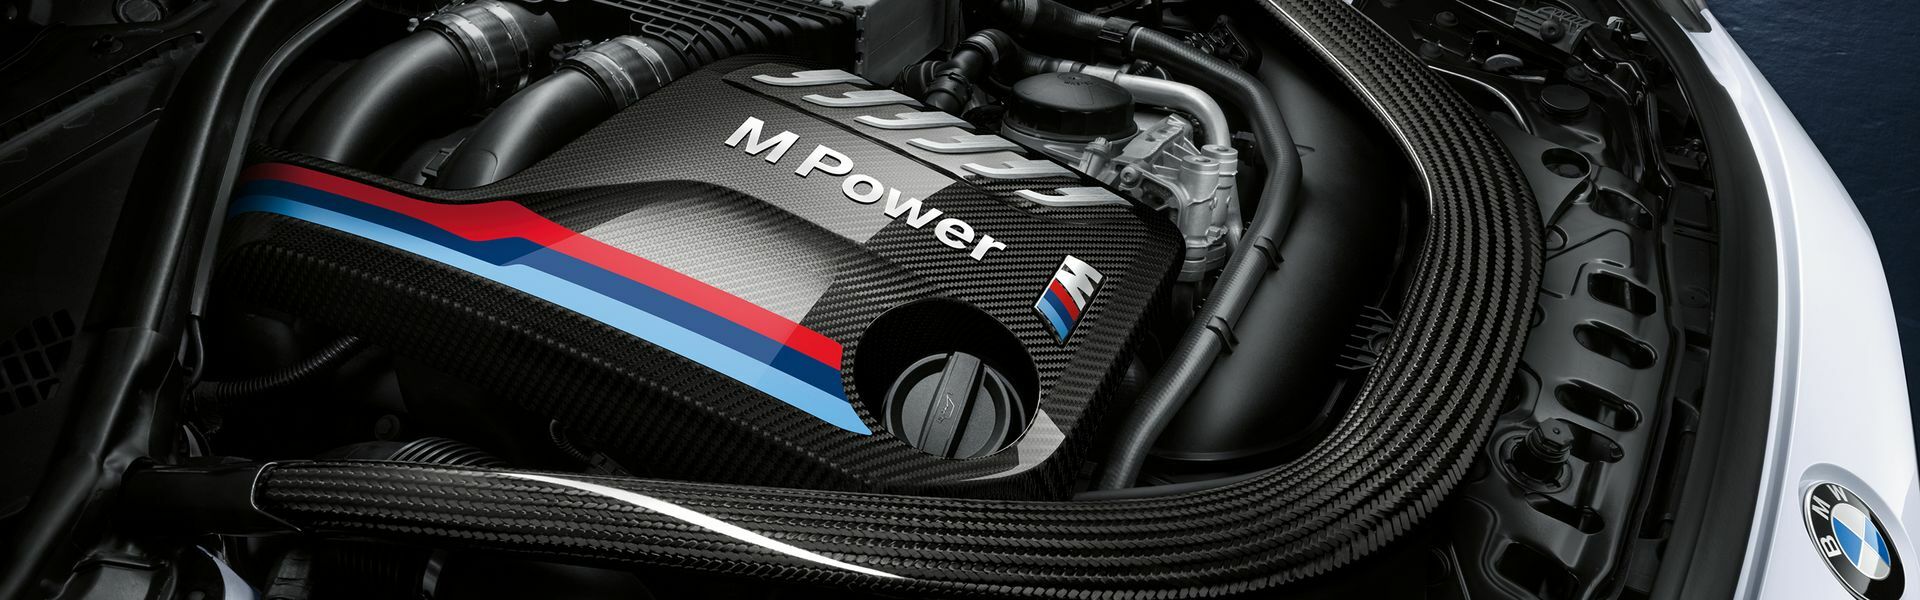 Zvýšení výkonu/ Softwarové úpravy/ Drobné performance díly pro automobil BMW M6 F06